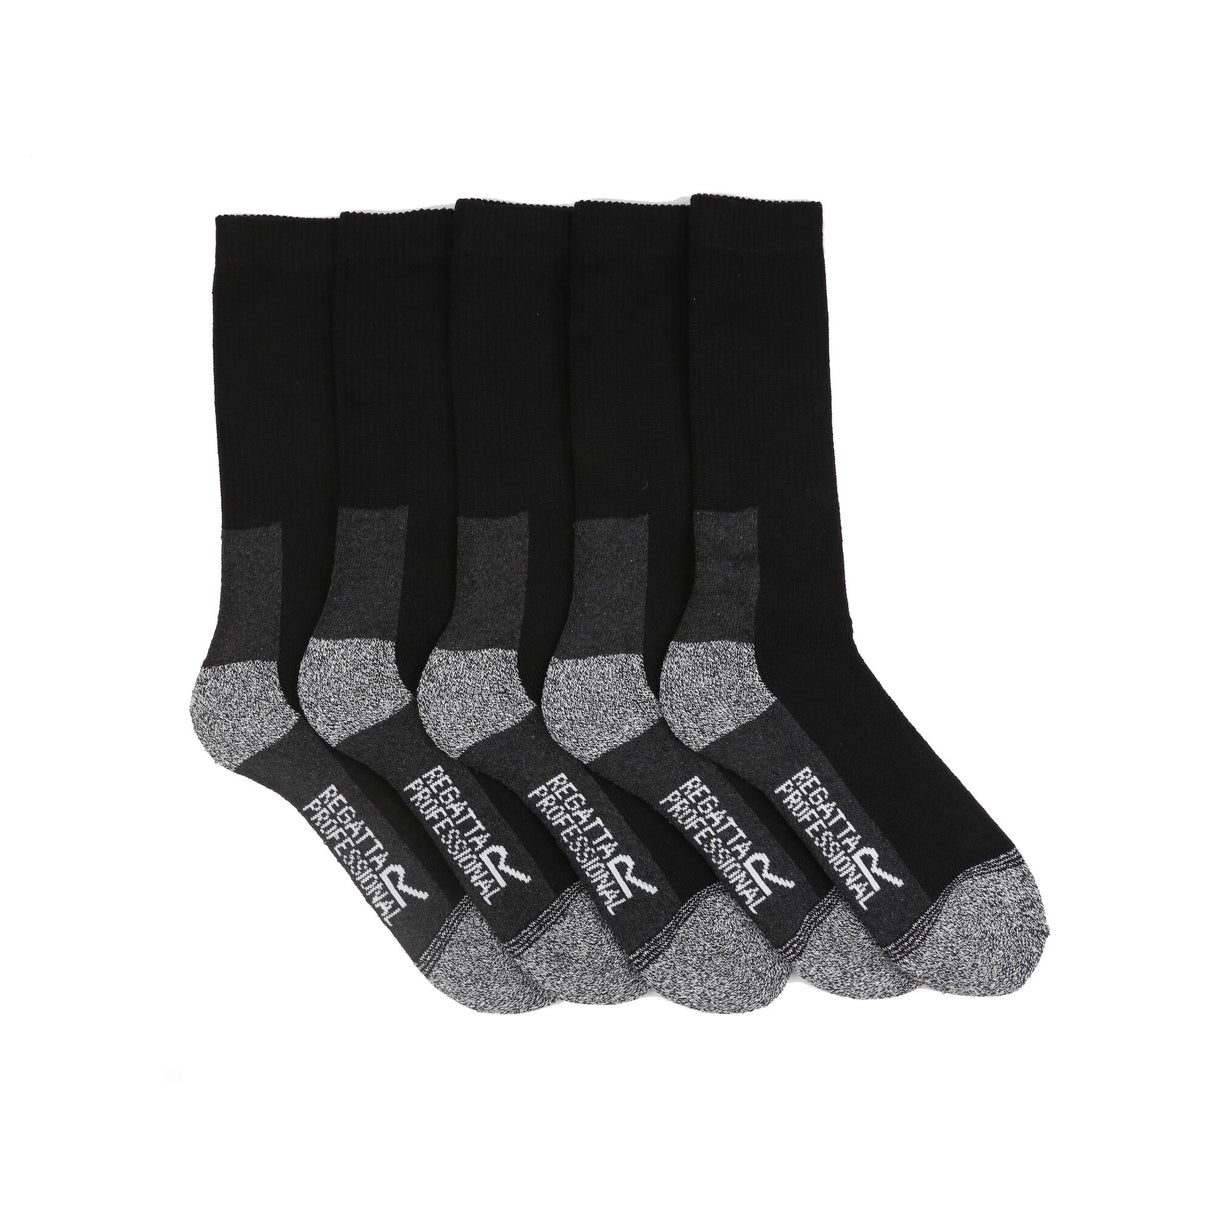 Regatta Professional Pro 5 Pack Work Sock